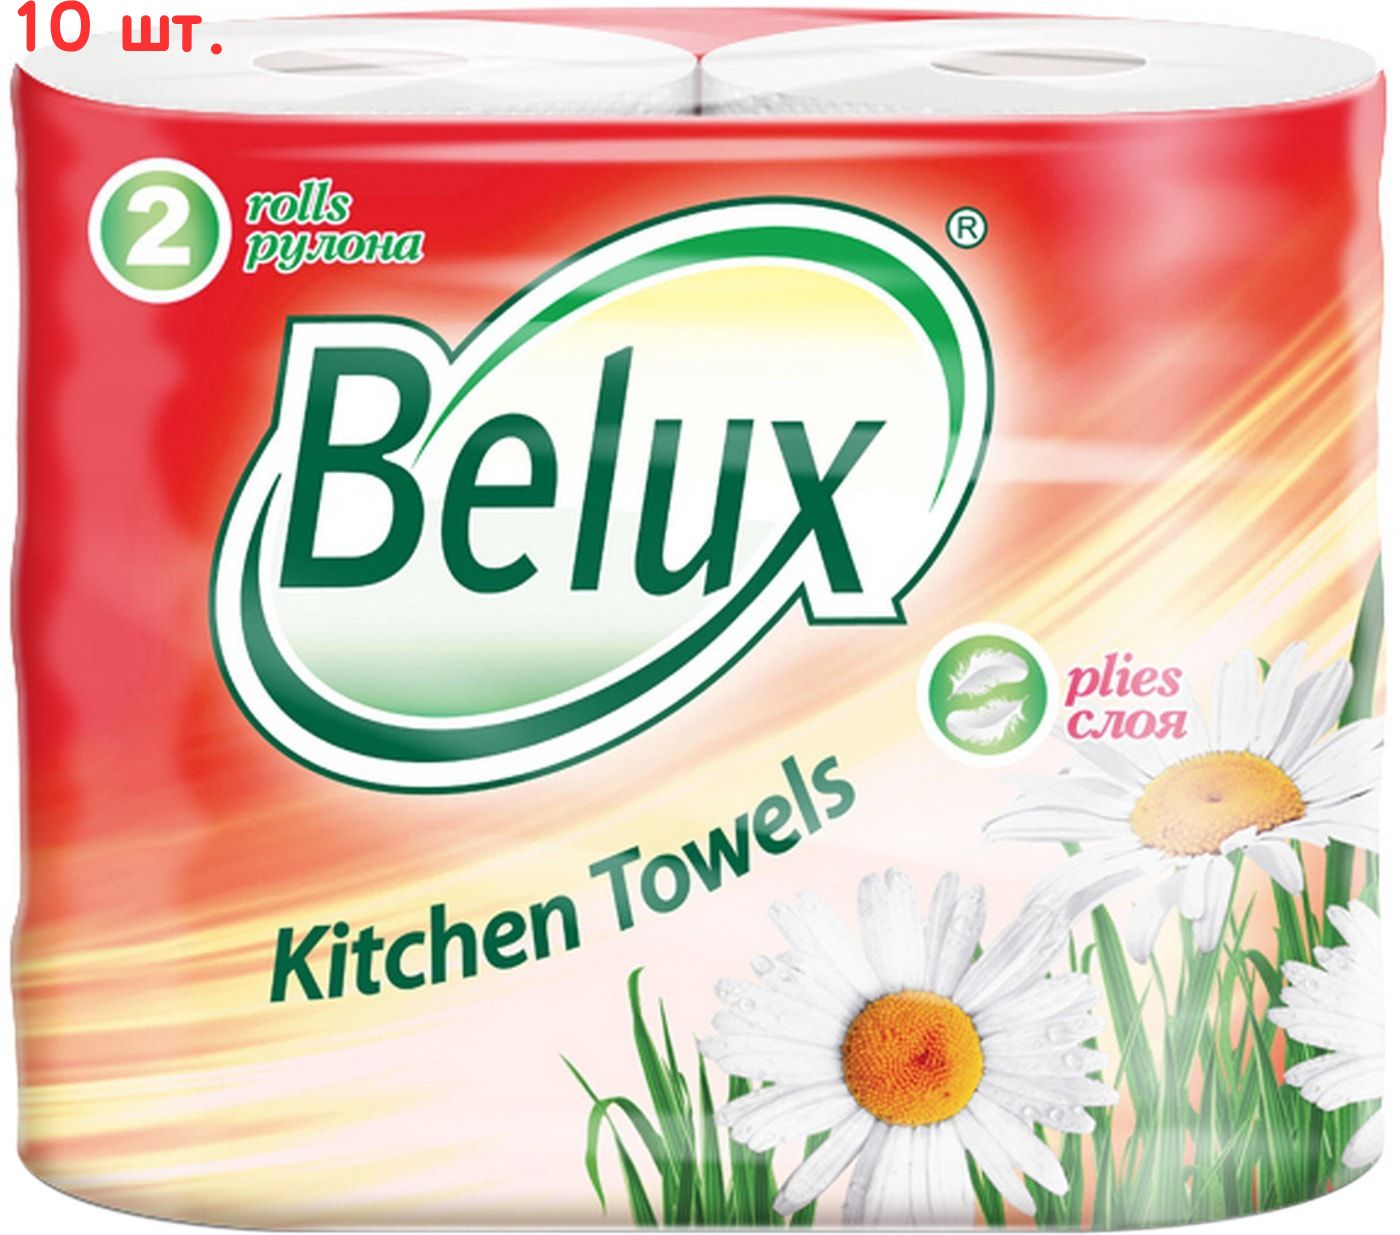 Бумажные полотенца Belux 2-слоя. Belux полотенца 2-х слойные 2шт. Белые (12,5м). Бумажное полотенце белое Belux 2сл, 2шт 1/12. Бумажные полотенца Belux 2-х слойные.